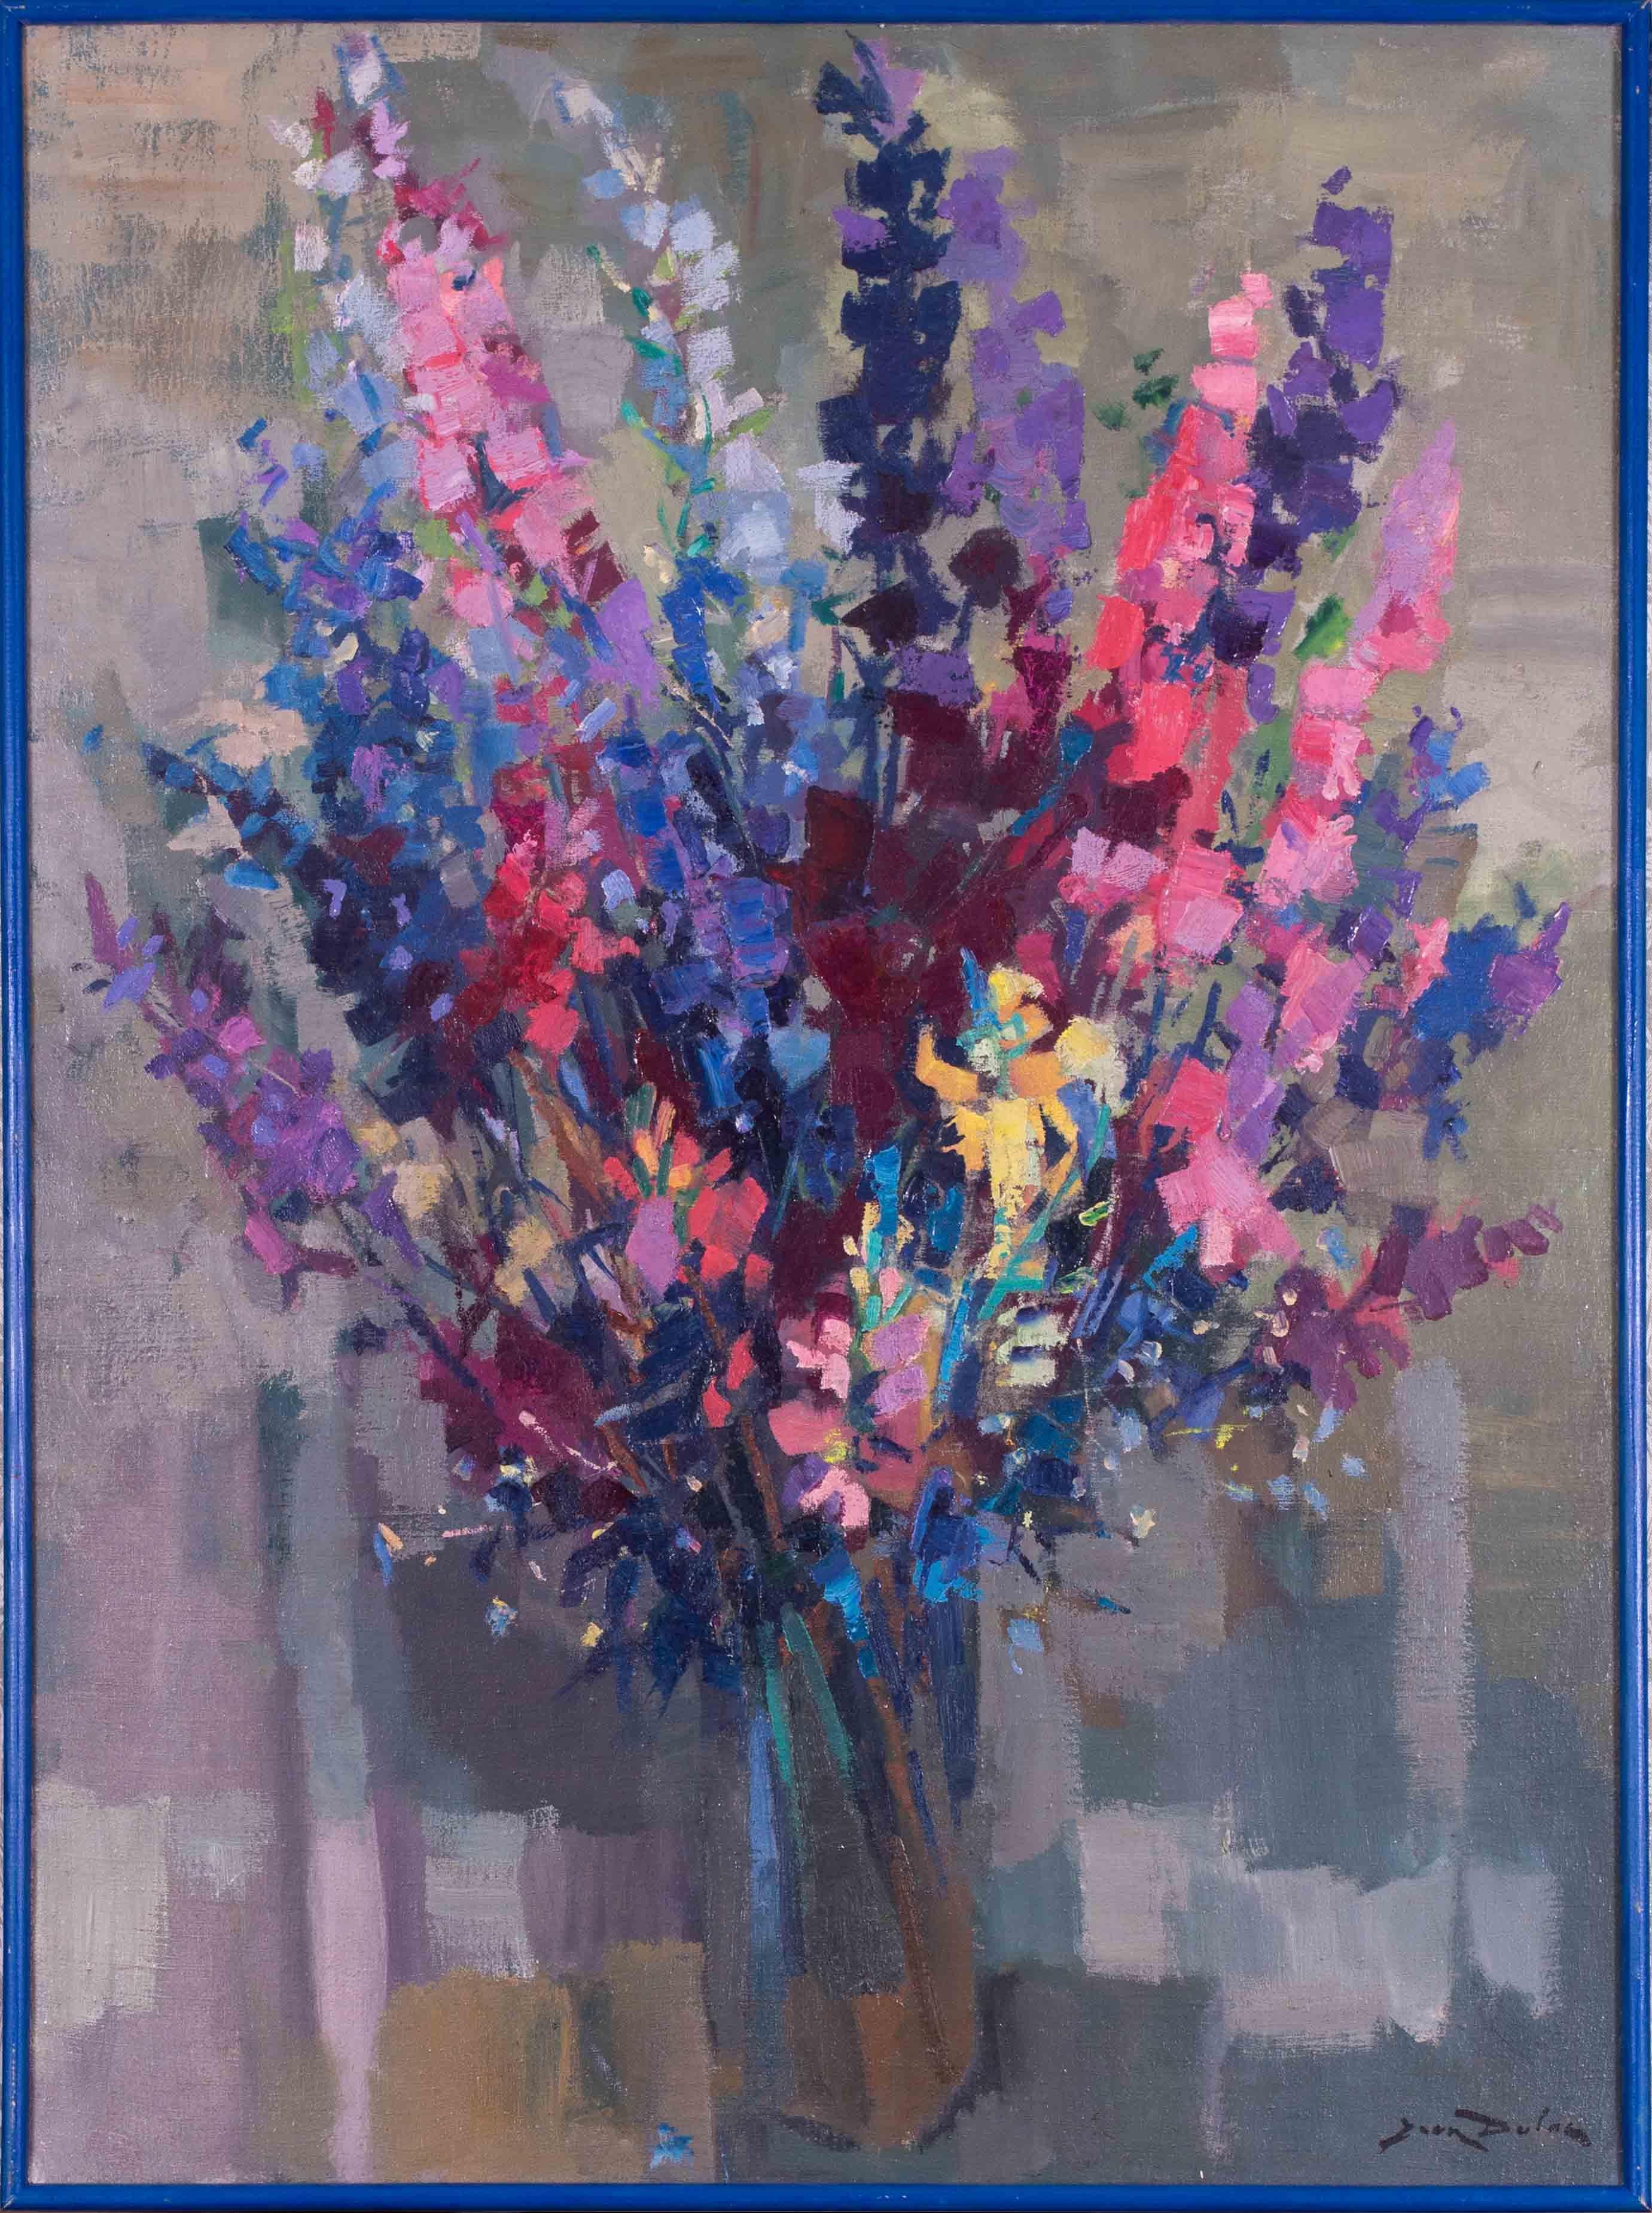 1965 Nature morte post-impressionniste française de fleurs bleues et roses